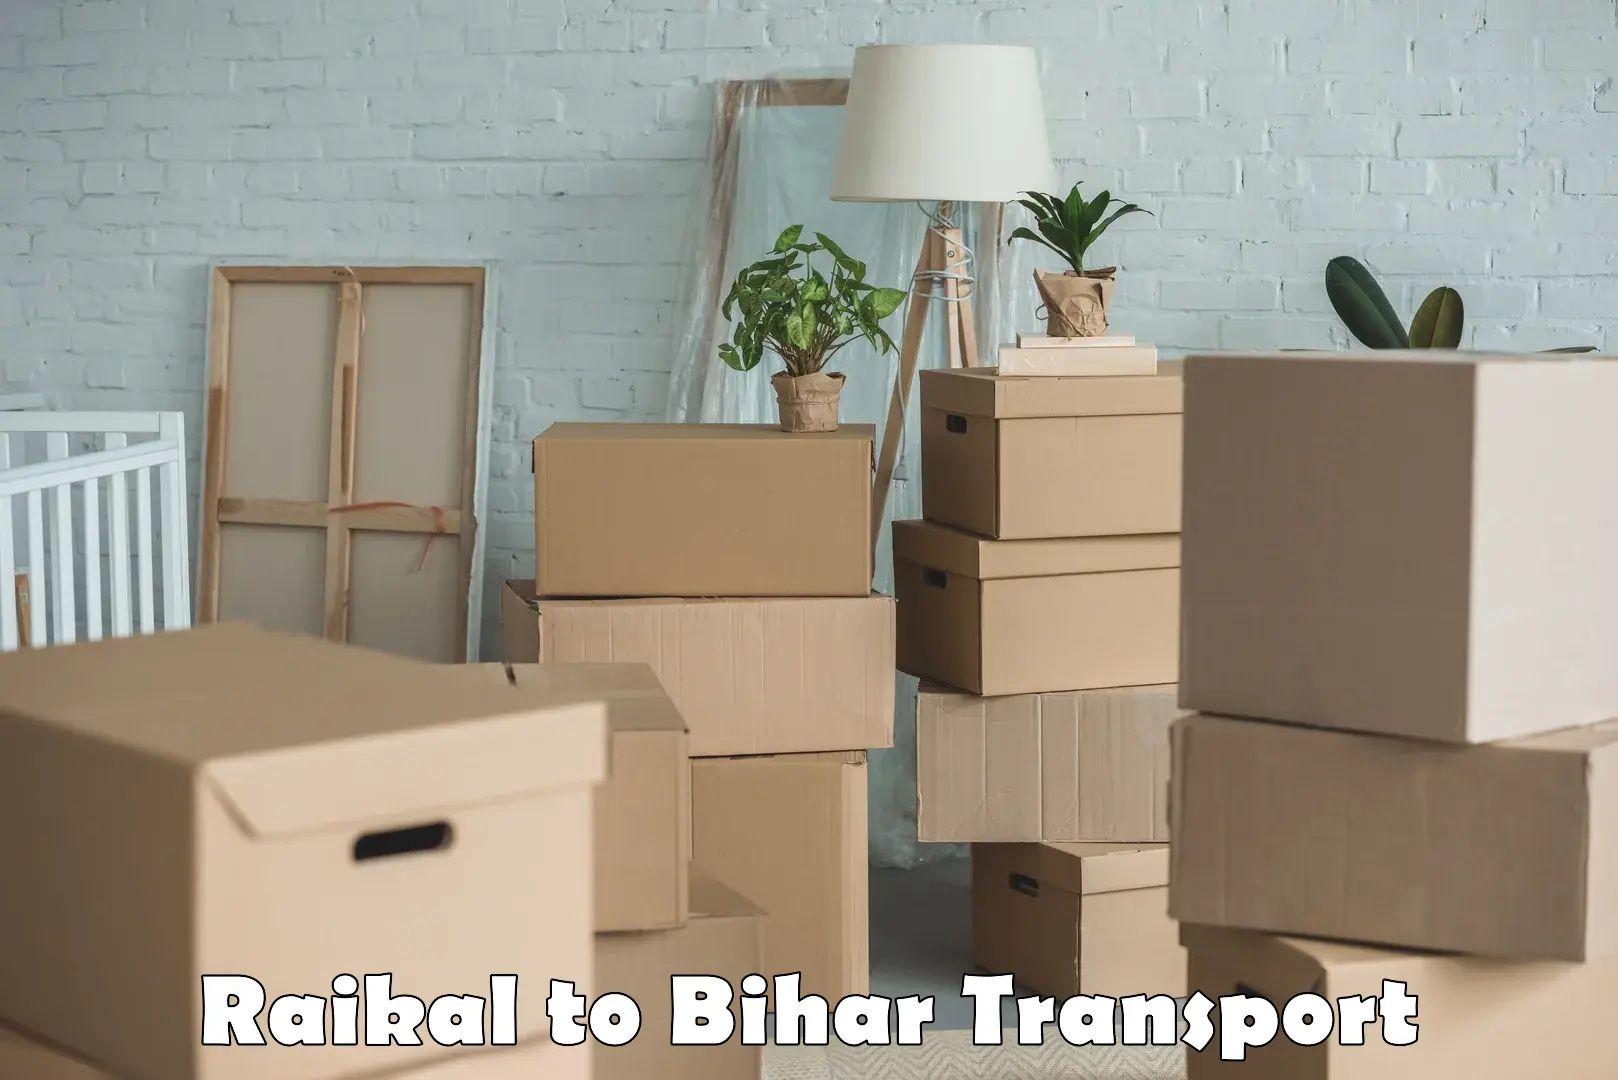 Furniture transport service Raikal to Sangrampur